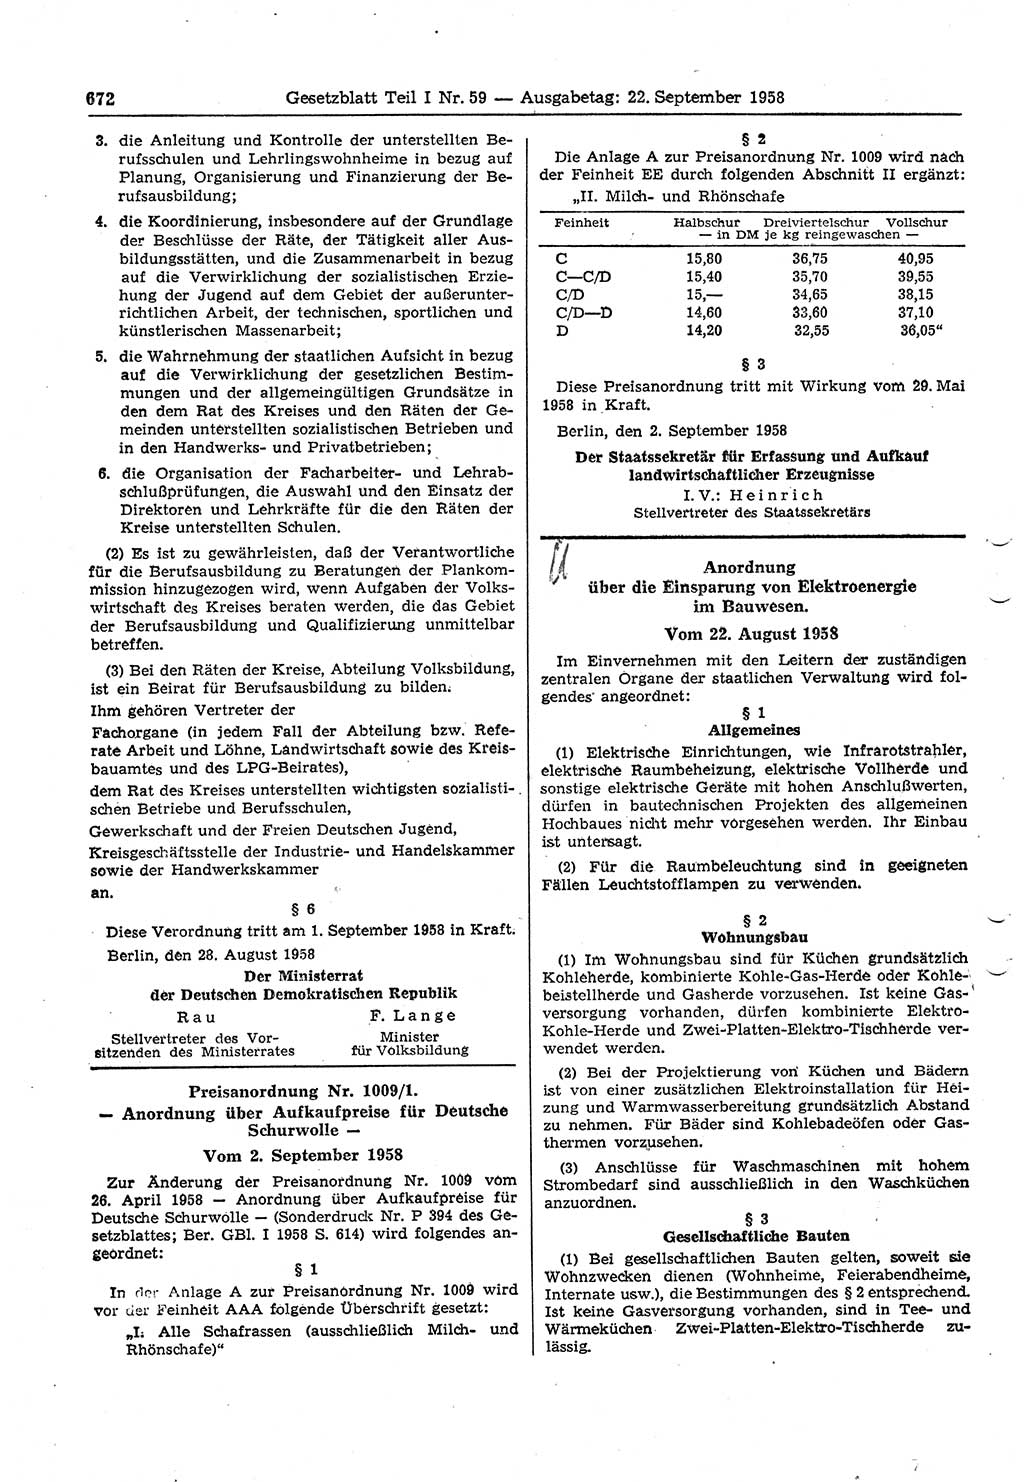 Gesetzblatt (GBl.) der Deutschen Demokratischen Republik (DDR) Teil Ⅰ 1958, Seite 672 (GBl. DDR Ⅰ 1958, S. 672)